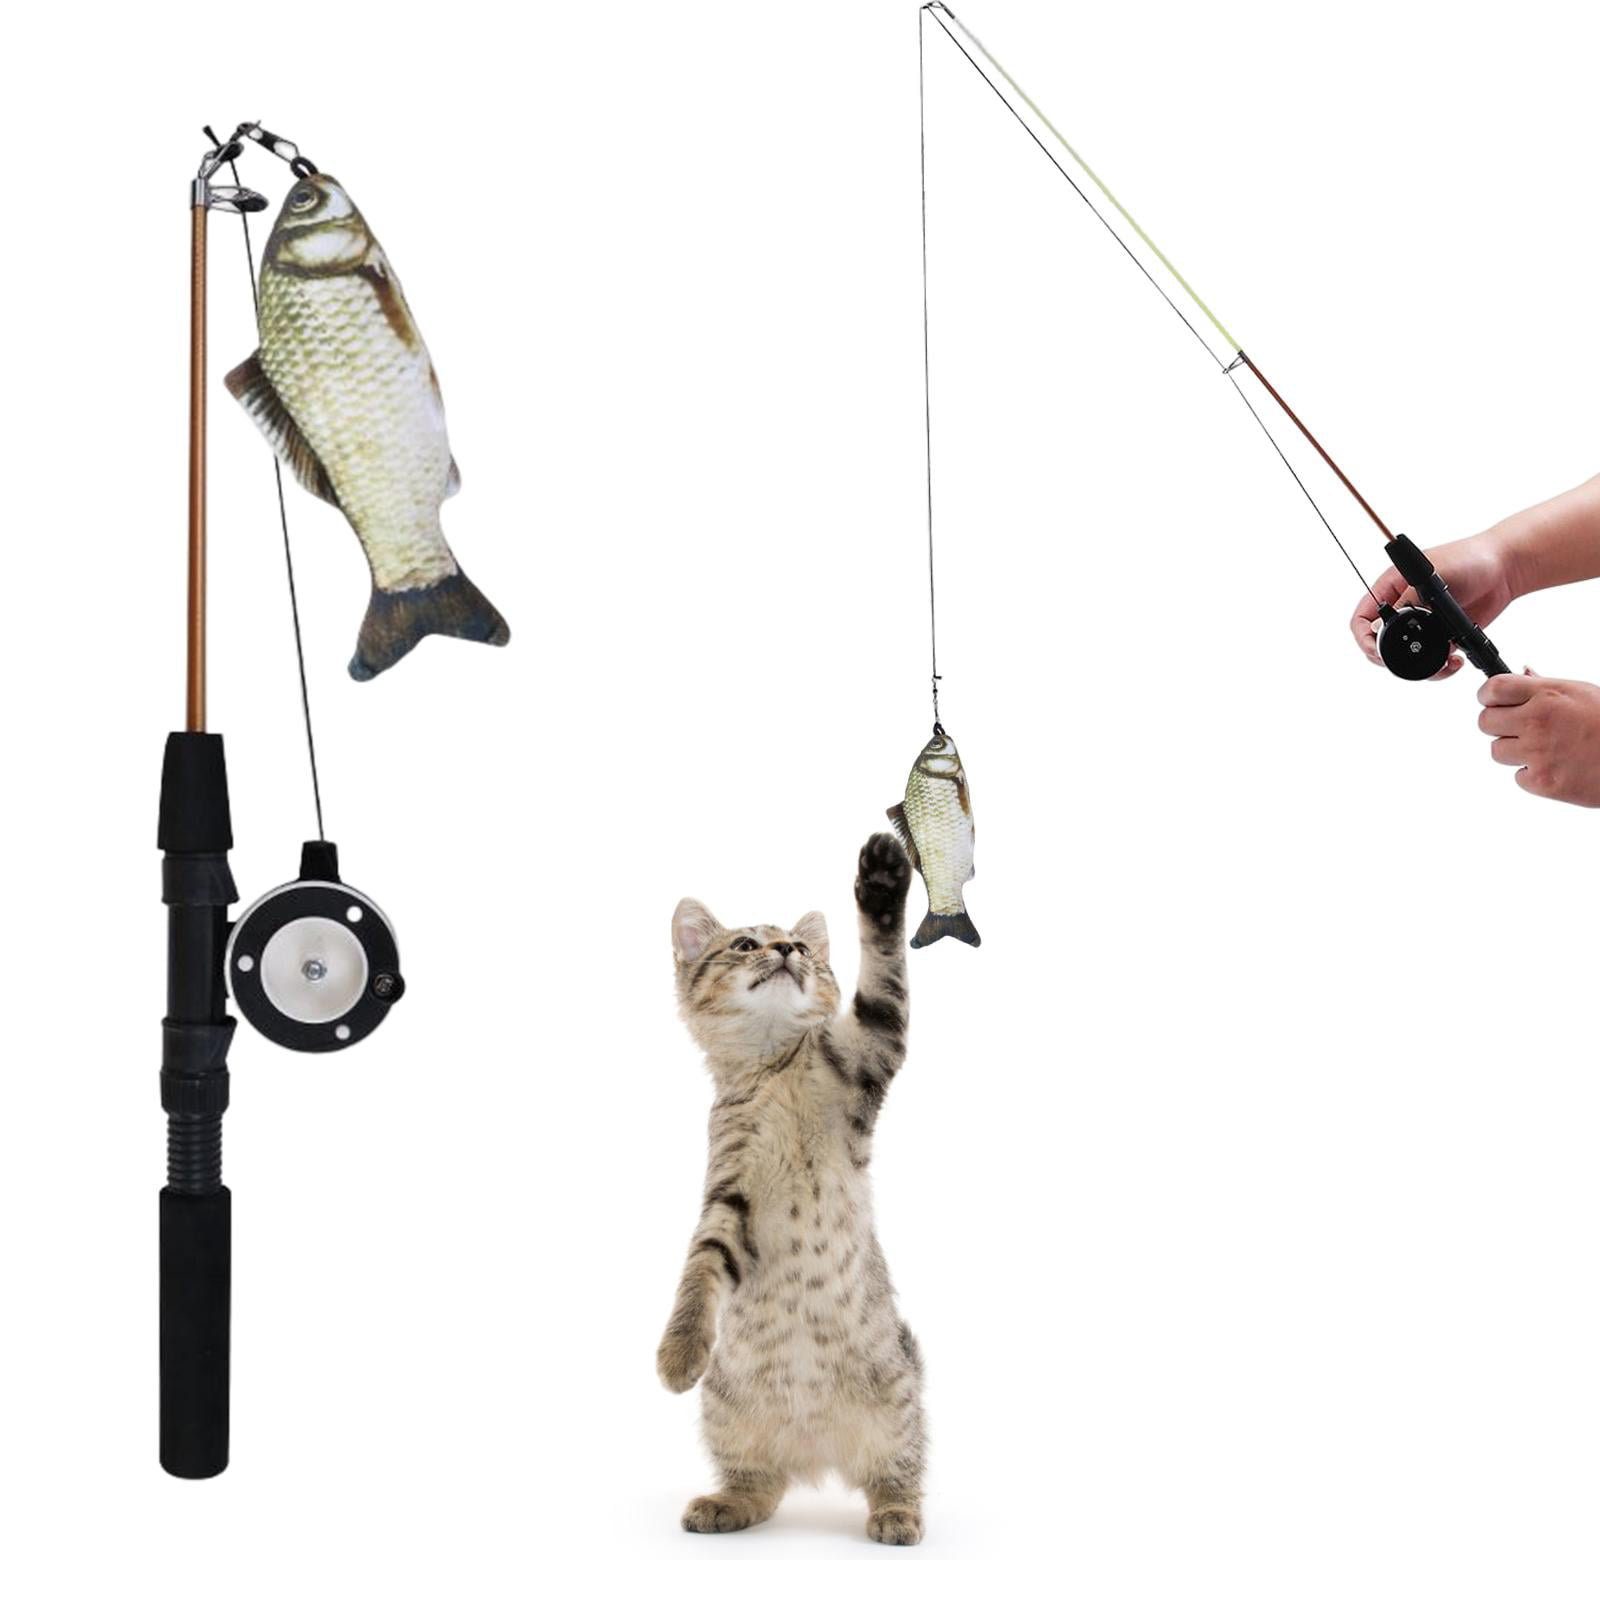 Kitten Training Exerciser The Cat Fishing Pole Toy Toys Kittens